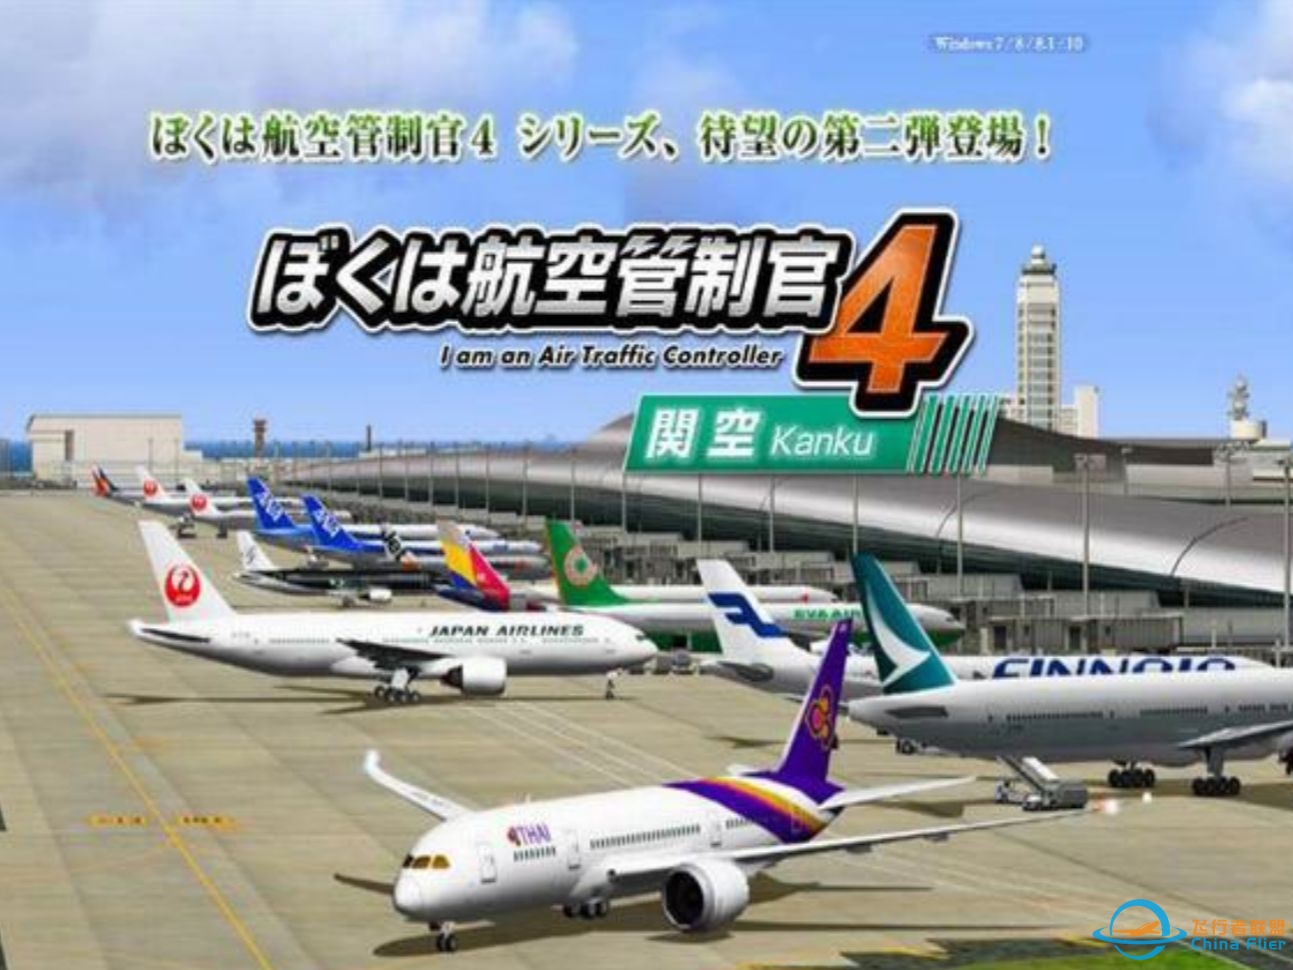 我是航空管制官4 ACT4 大阪关西国际空港篇-9（完结篇）-5900 